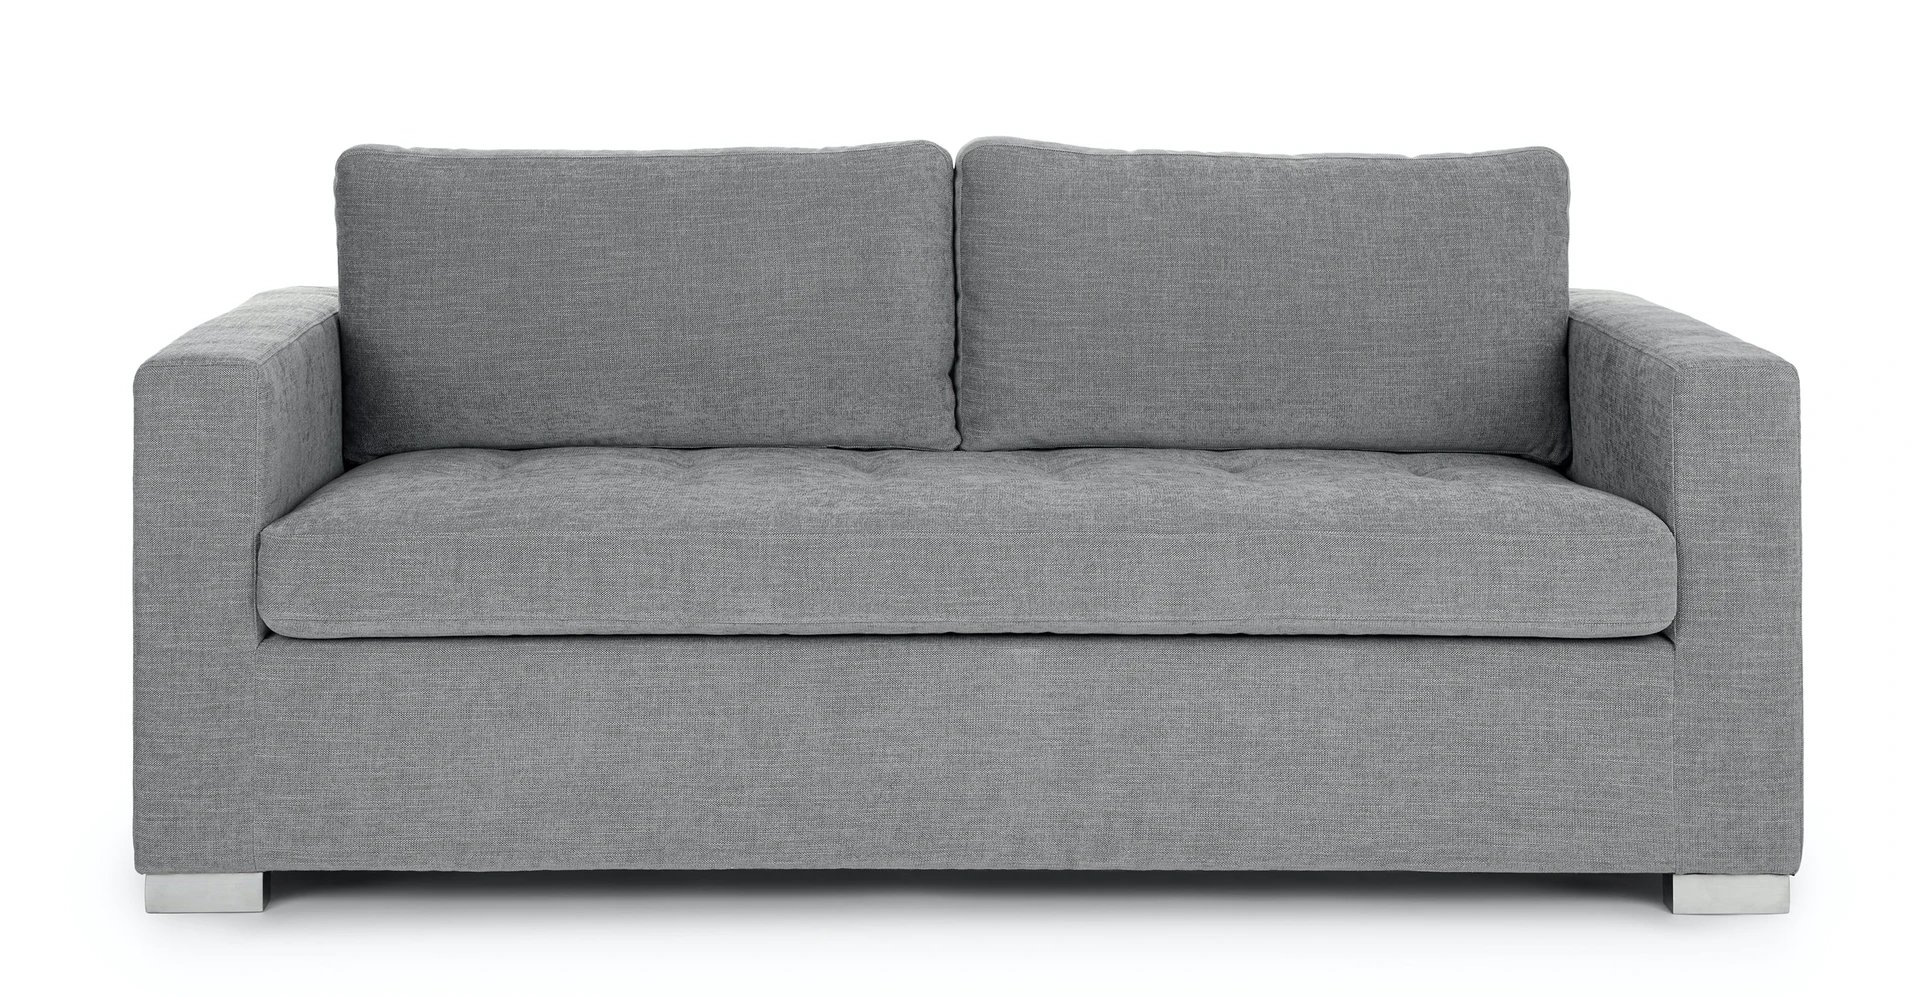 soma dawn gray sofa bed